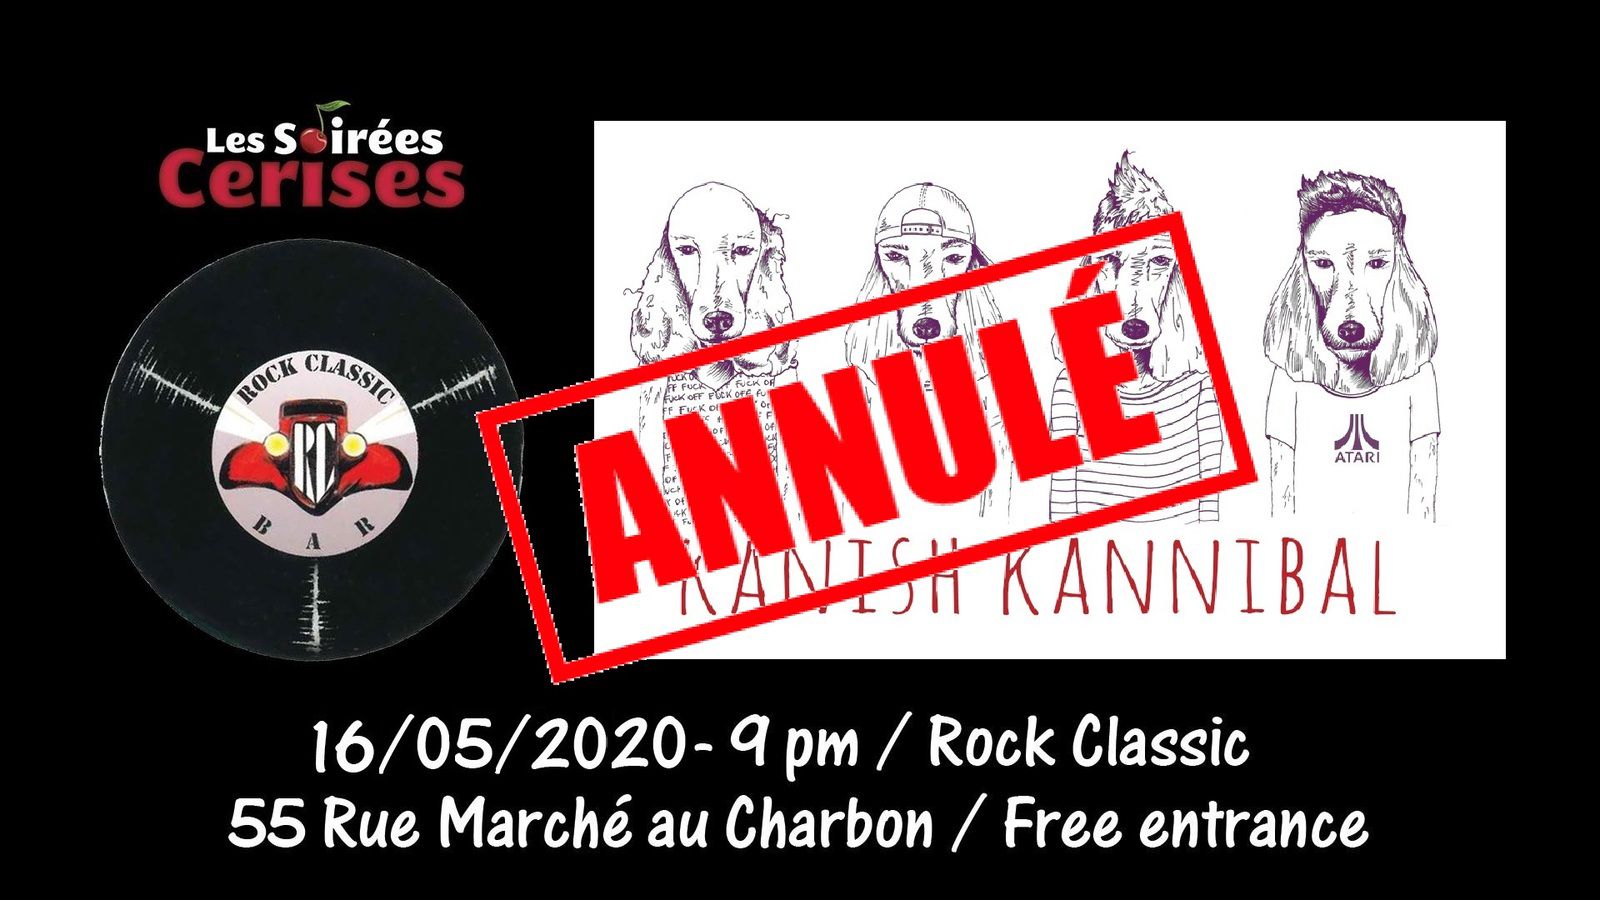 🎵 Kanish Kannibal @ Rock Classic - 16/05/2020 - annulé